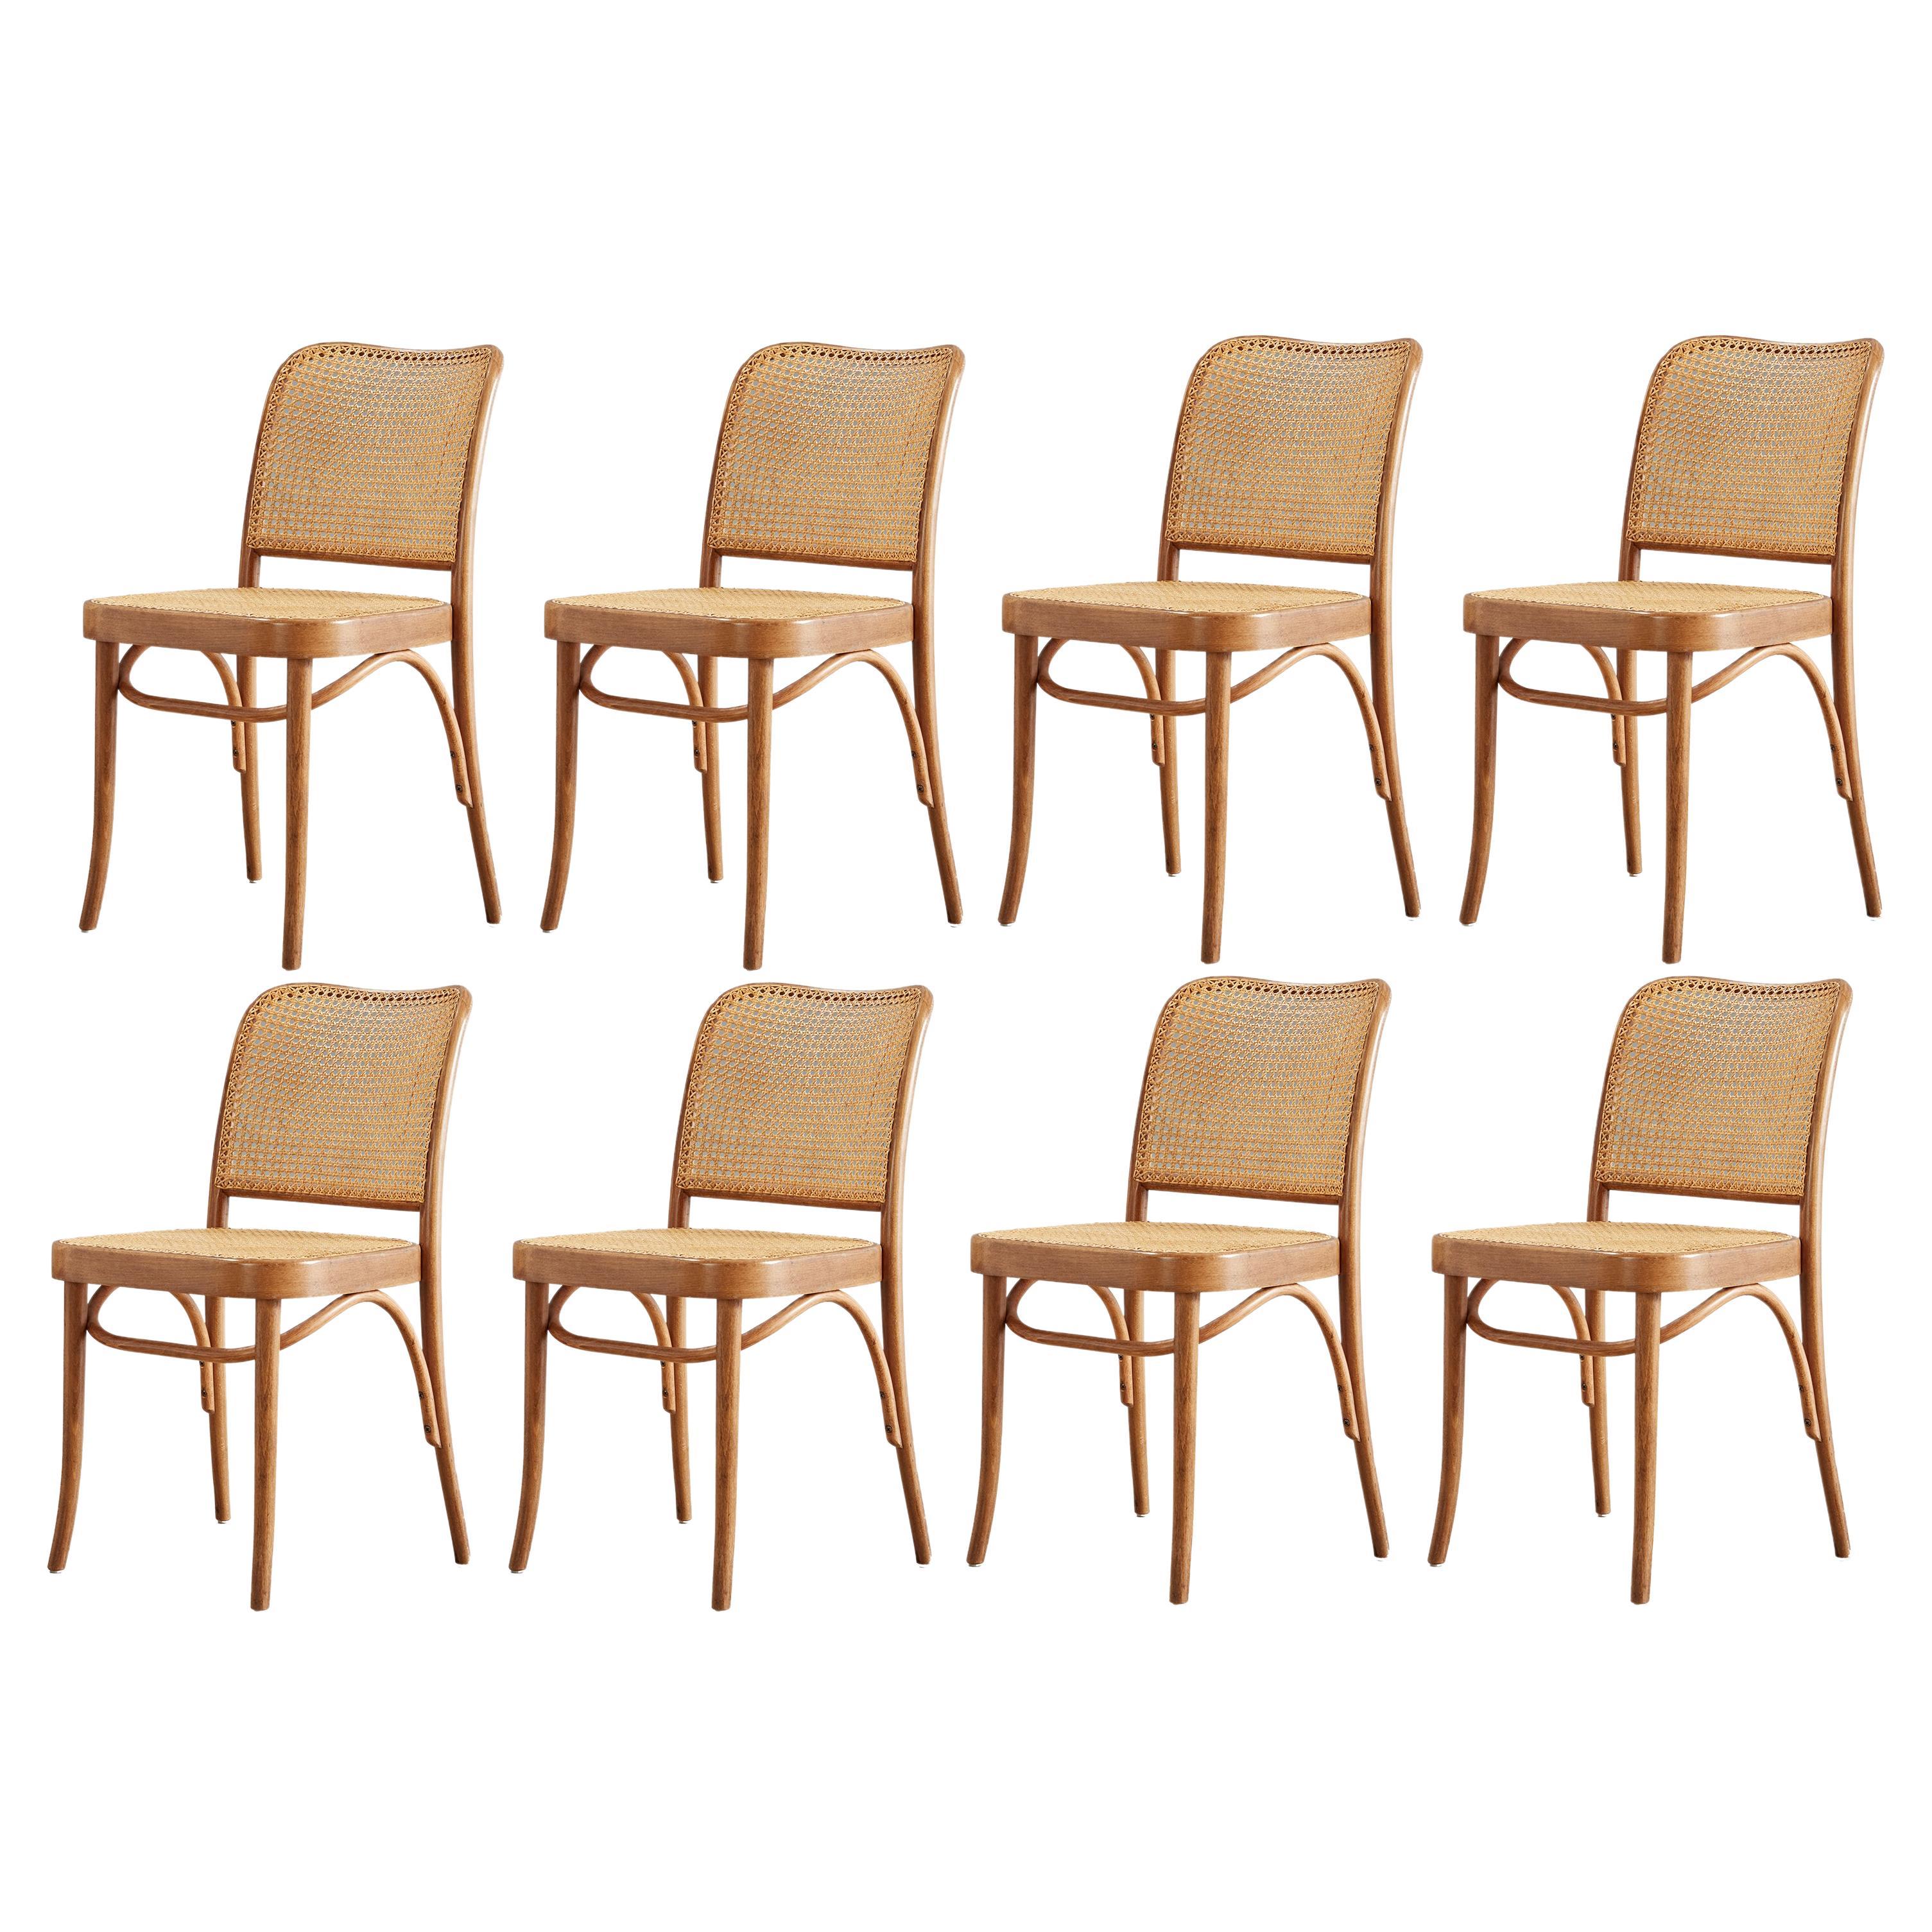 Prager Stuhl aus Bugholz und Schilfrohr von Josef Hoffman für Thonet, 8 Stück verfügbar 